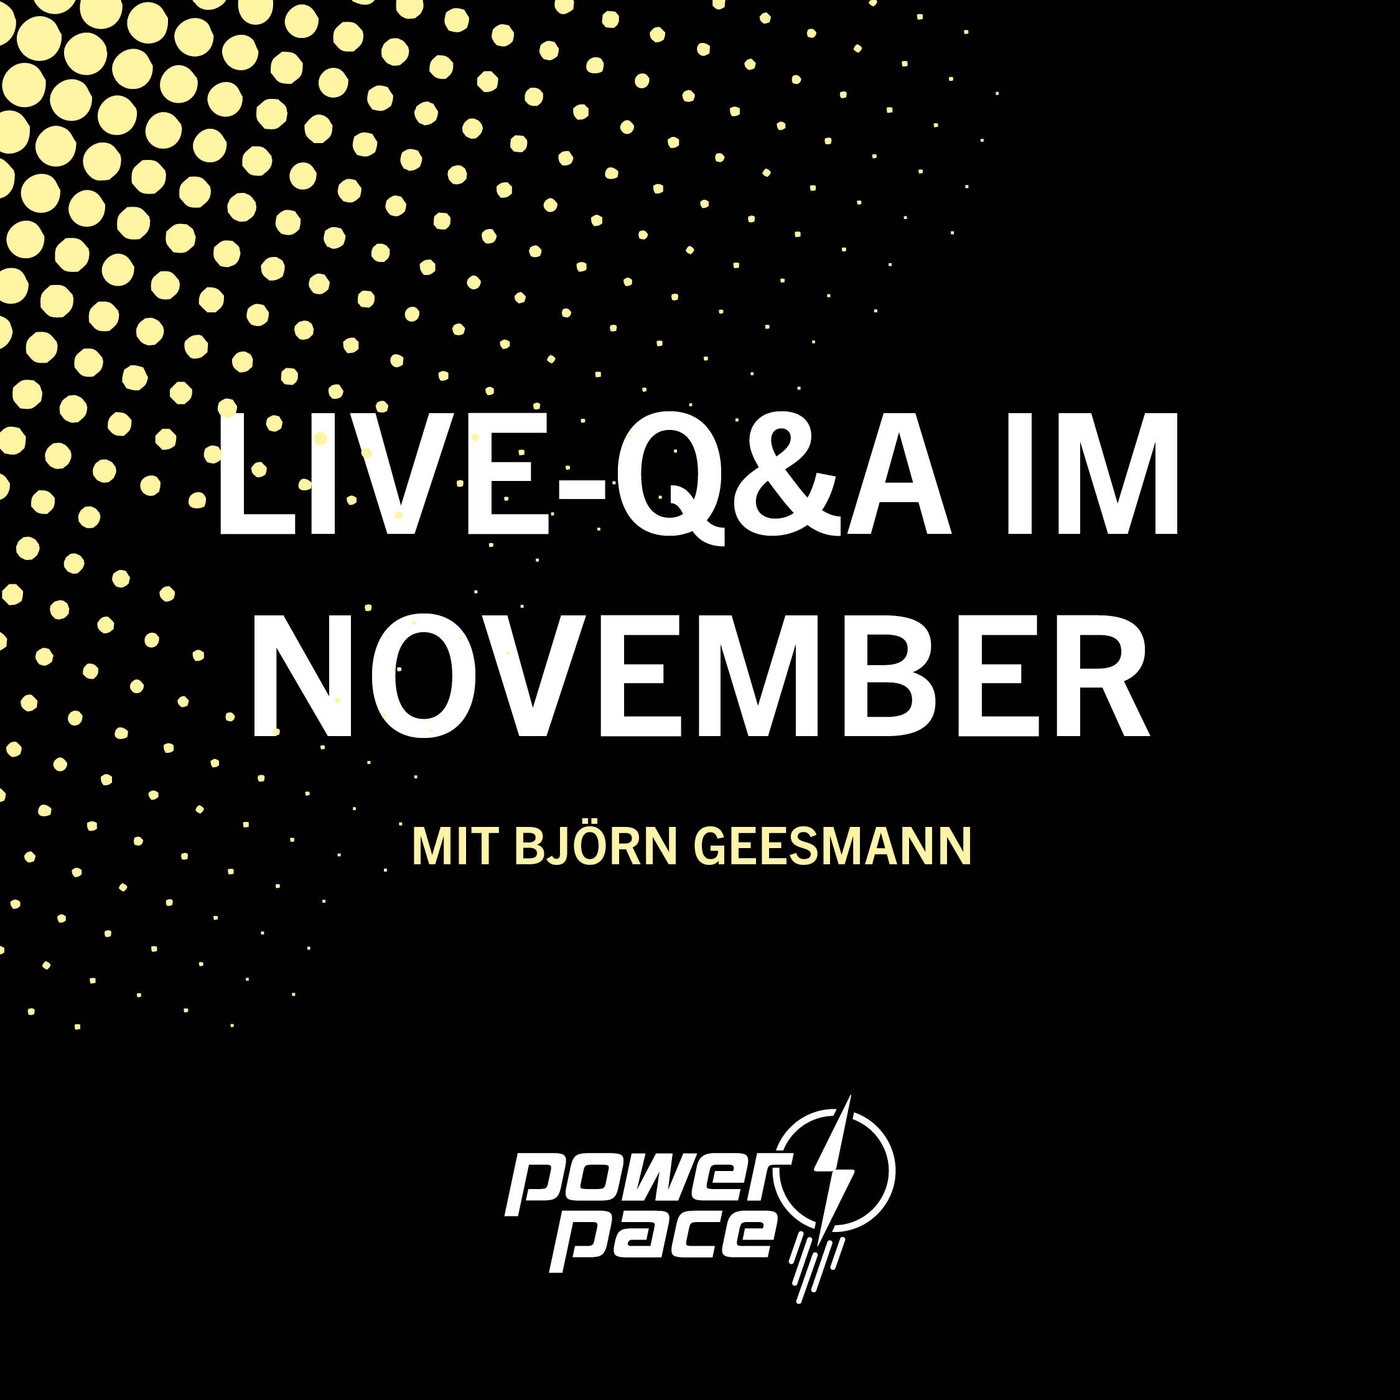 Die Live-Q&A im November